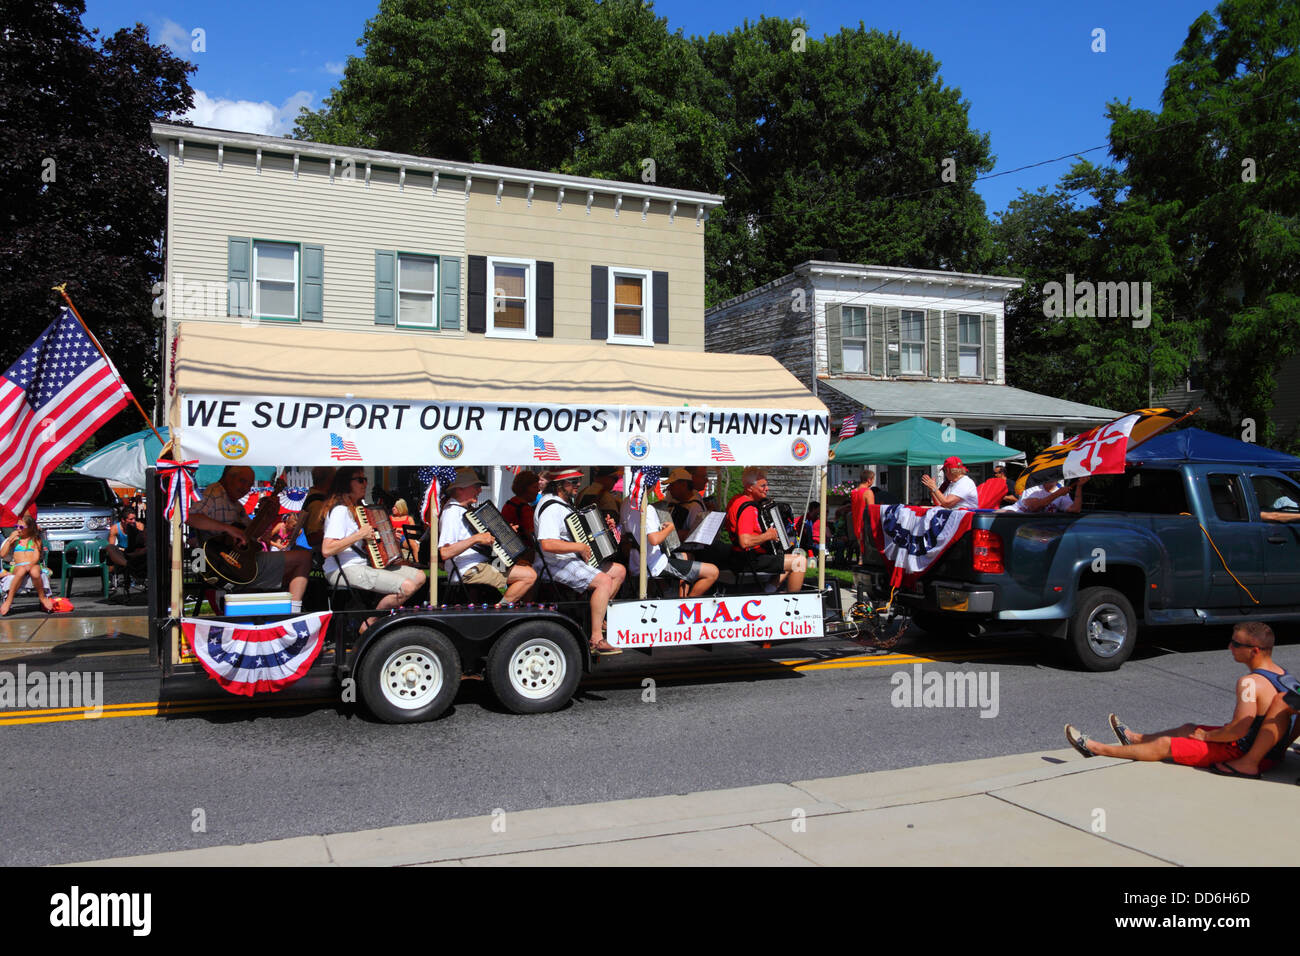 Maryland Accordion Club zeigt Unterstützung für Truppen in Afghanistan während der Parade zum Unabhängigkeitstag am 4th. Juli in Catonsville, Maryland, USA Stockfoto